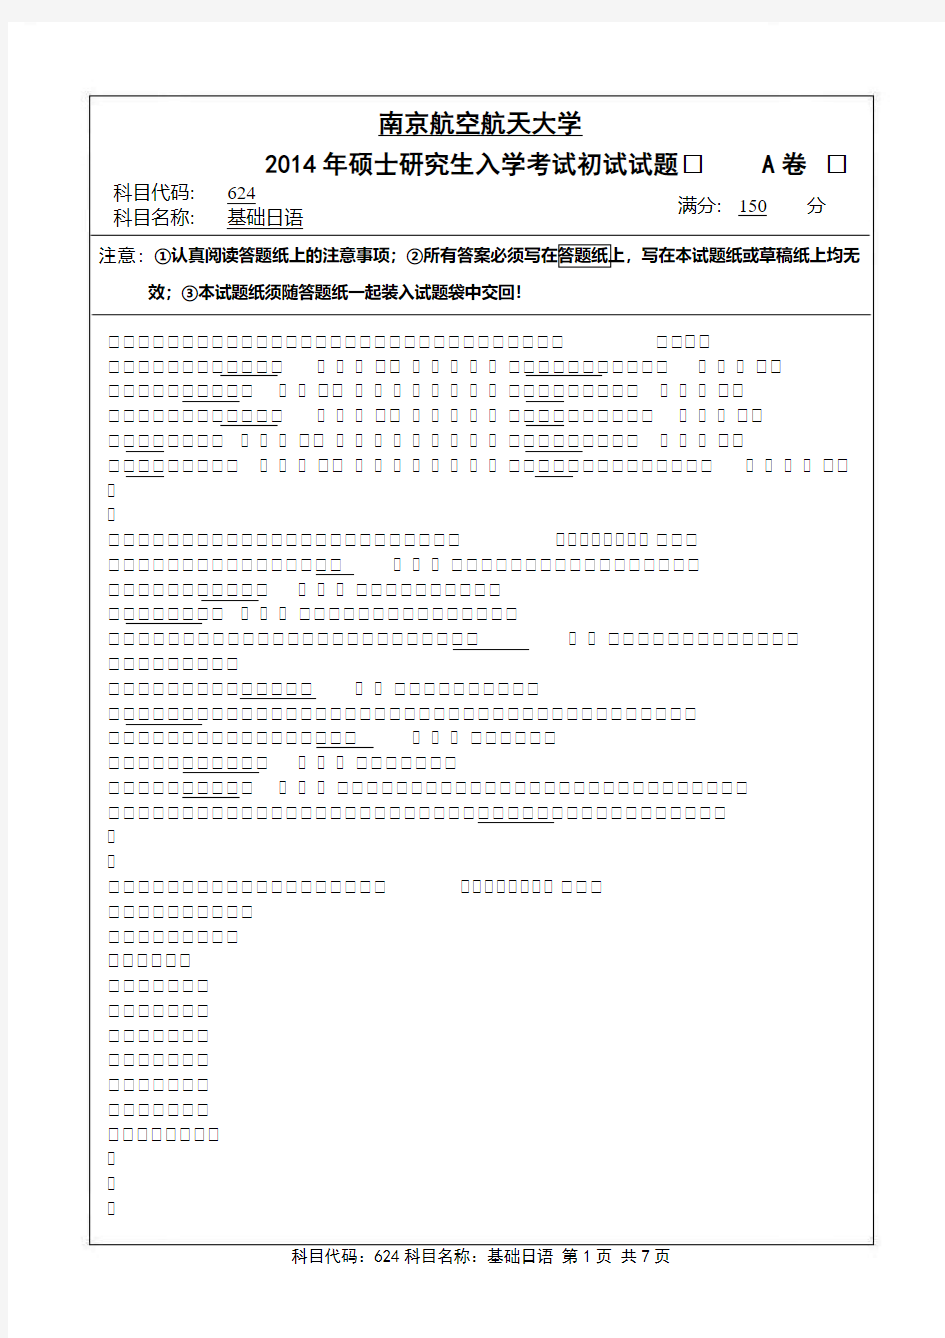 南京航空航天大学-2014年-硕士研究生招生考试初试试题(A卷)-624基础日语